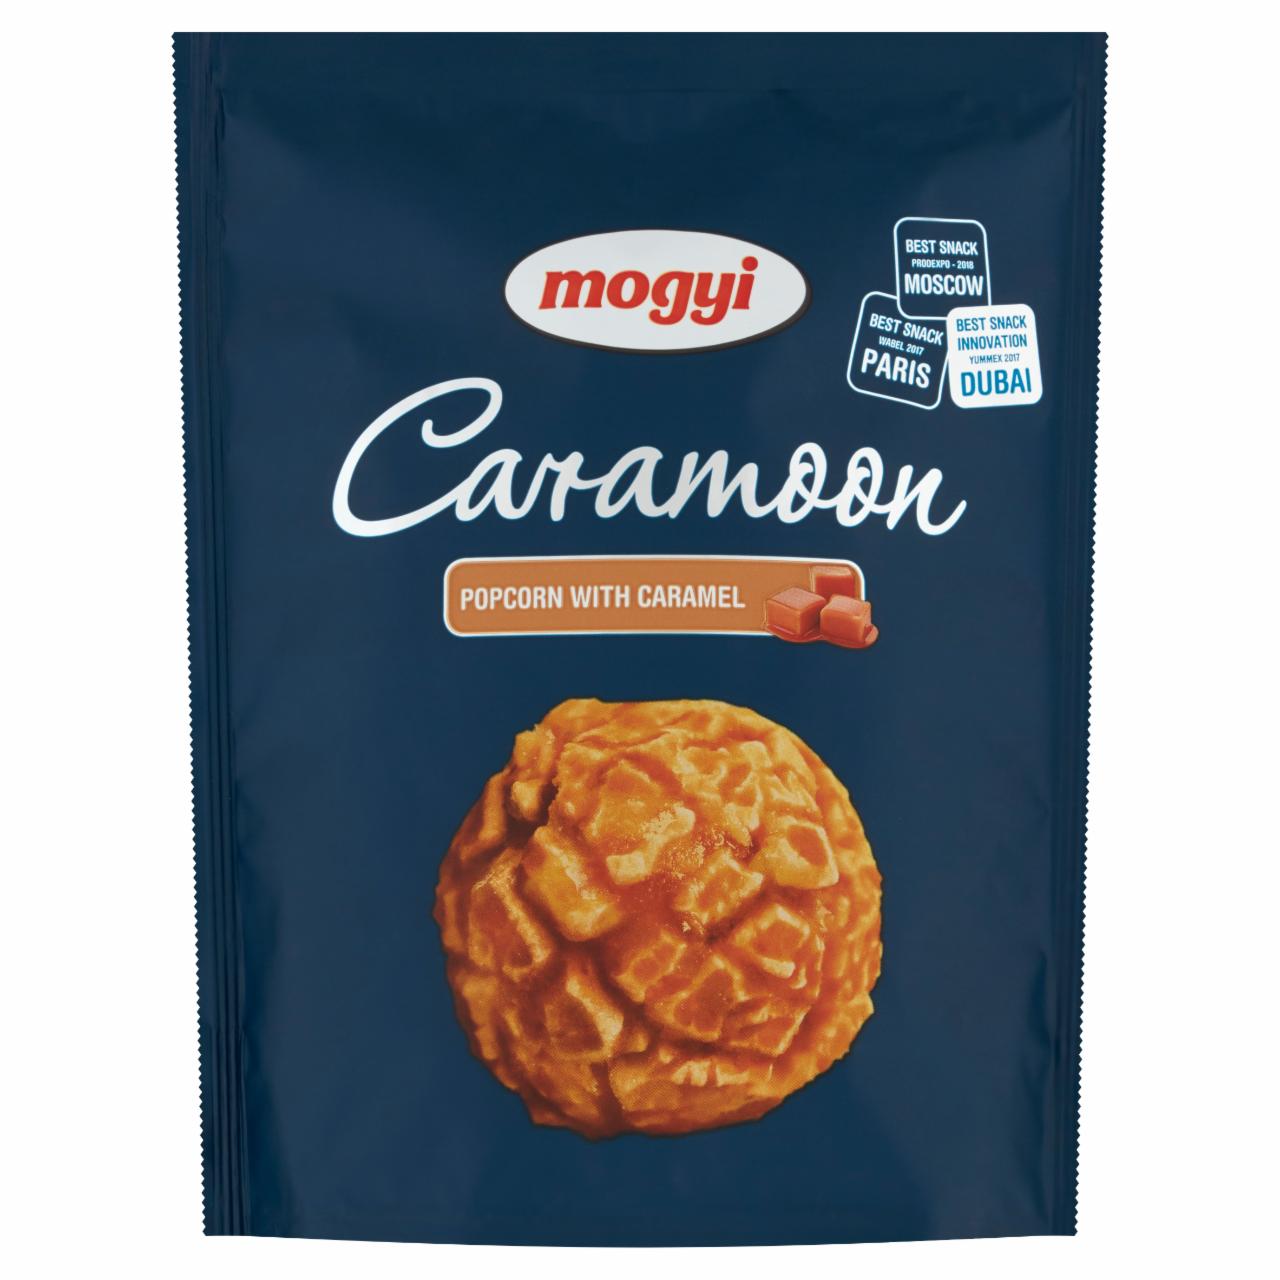 Фото - Попкорн со вкусом карамели Caramoon Mogyi